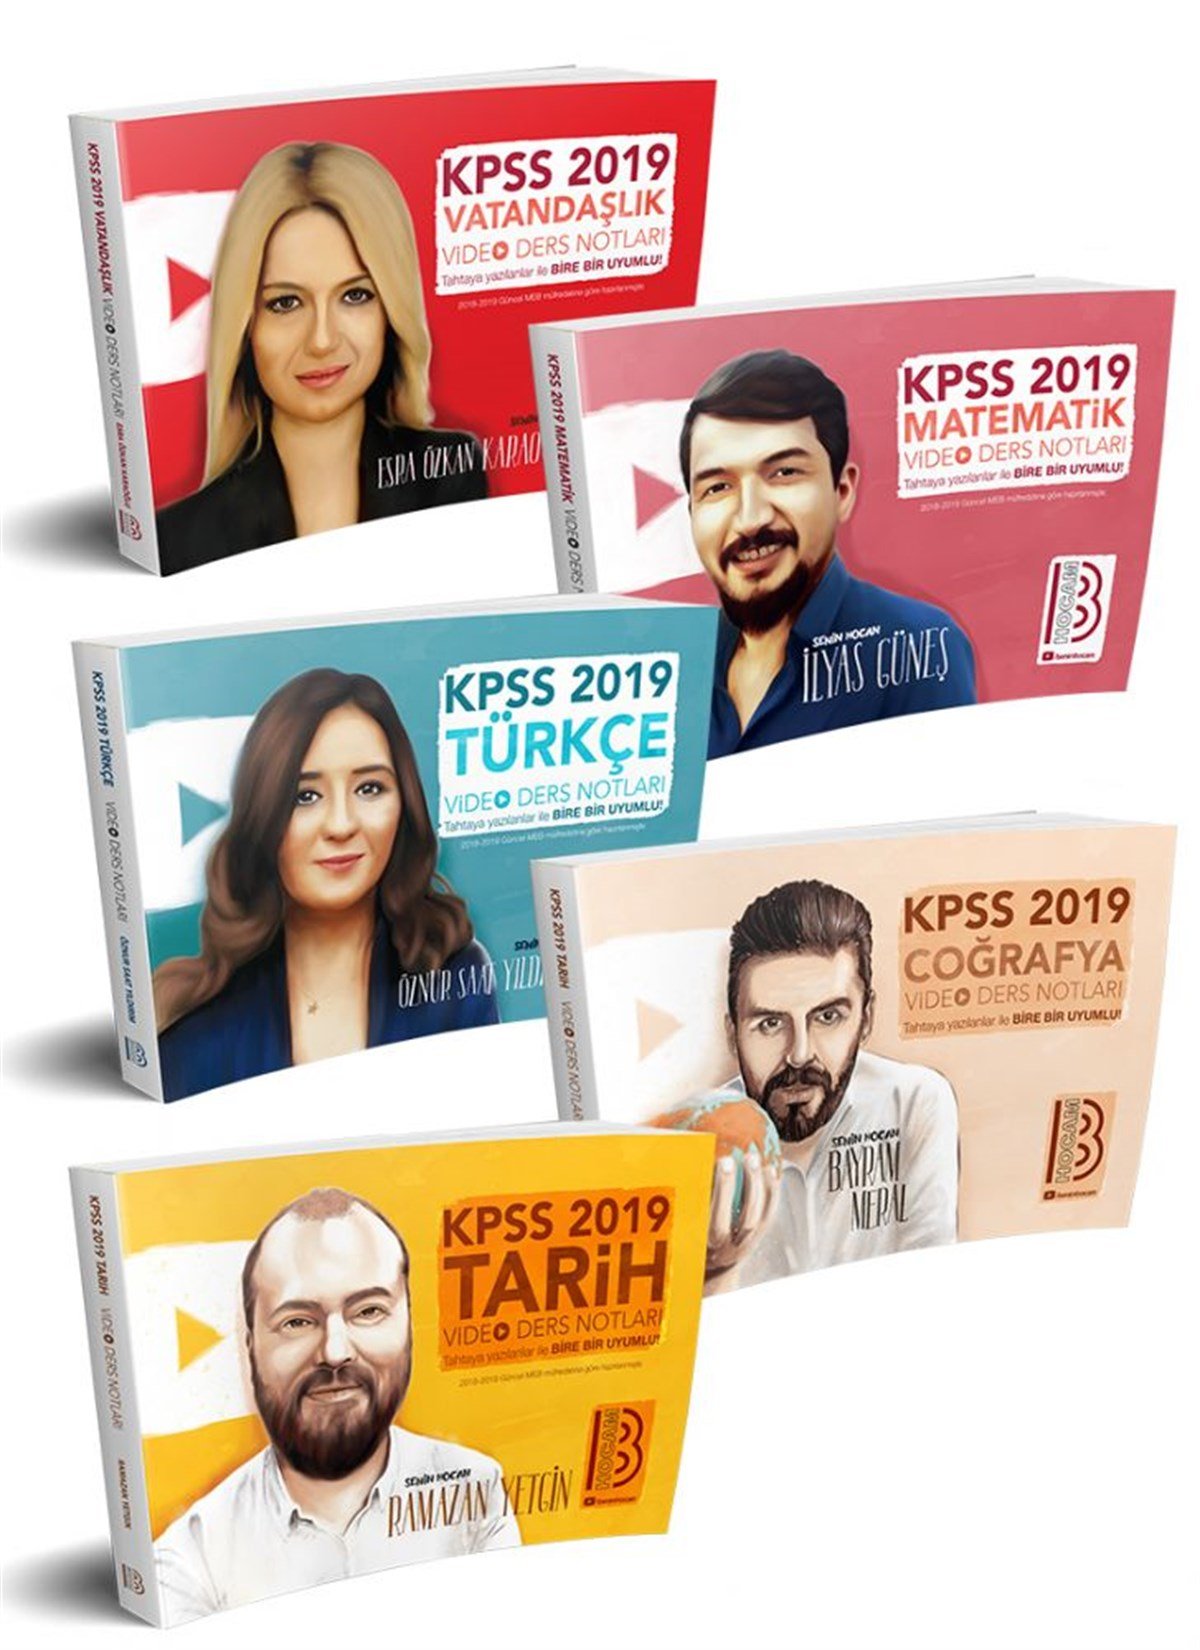 2019 KPSS GY - GK Video Ders Notları Seti Benim Hocam Yayınları